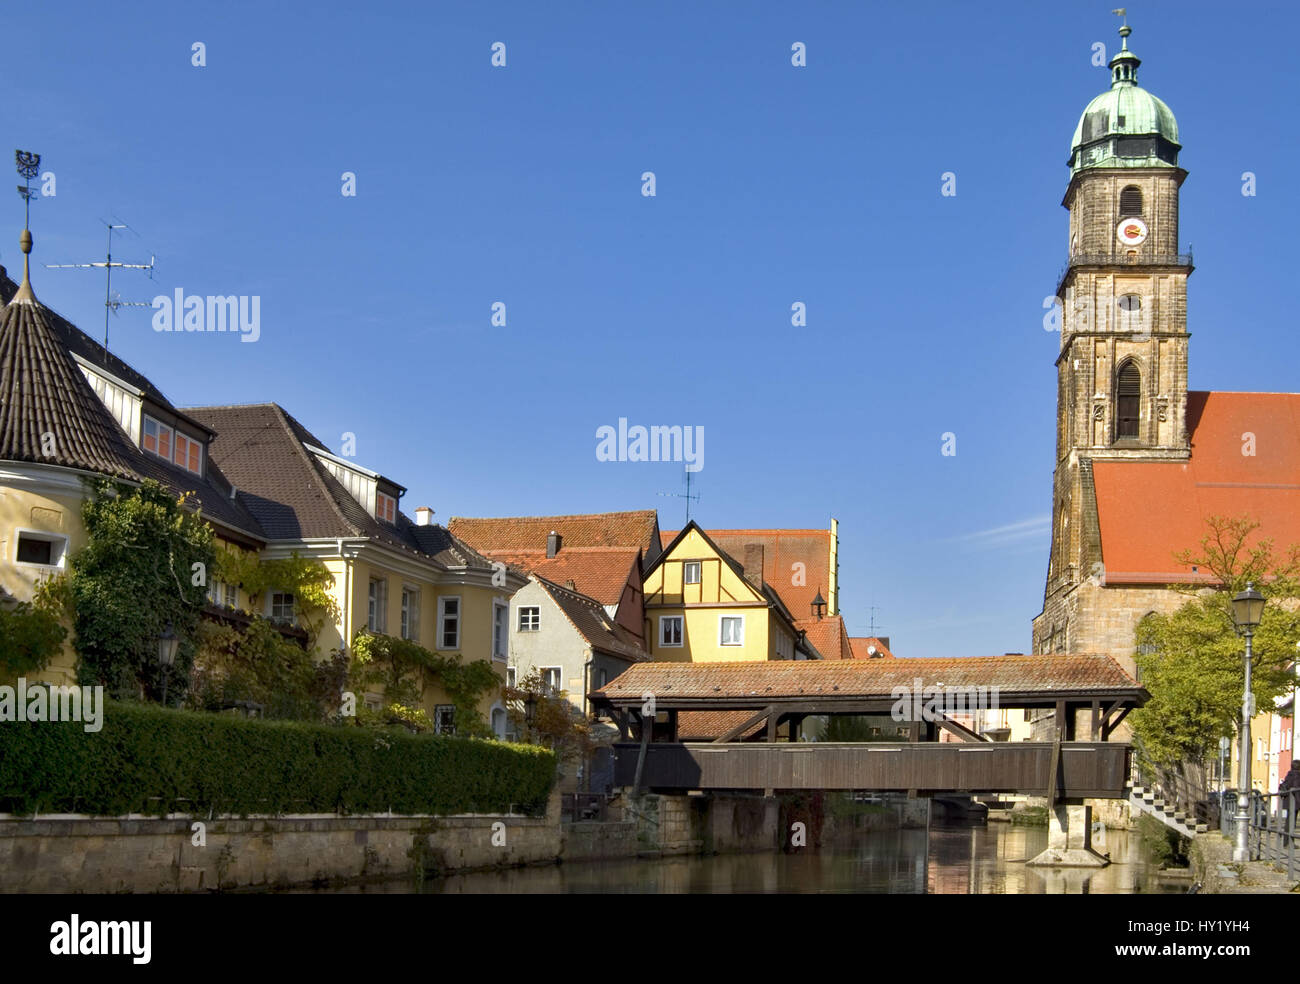 Blick über den Fluss Vils auf die Kirche St. Martins dans der Alstadt Von Amberg au Bayern. Banque D'Images